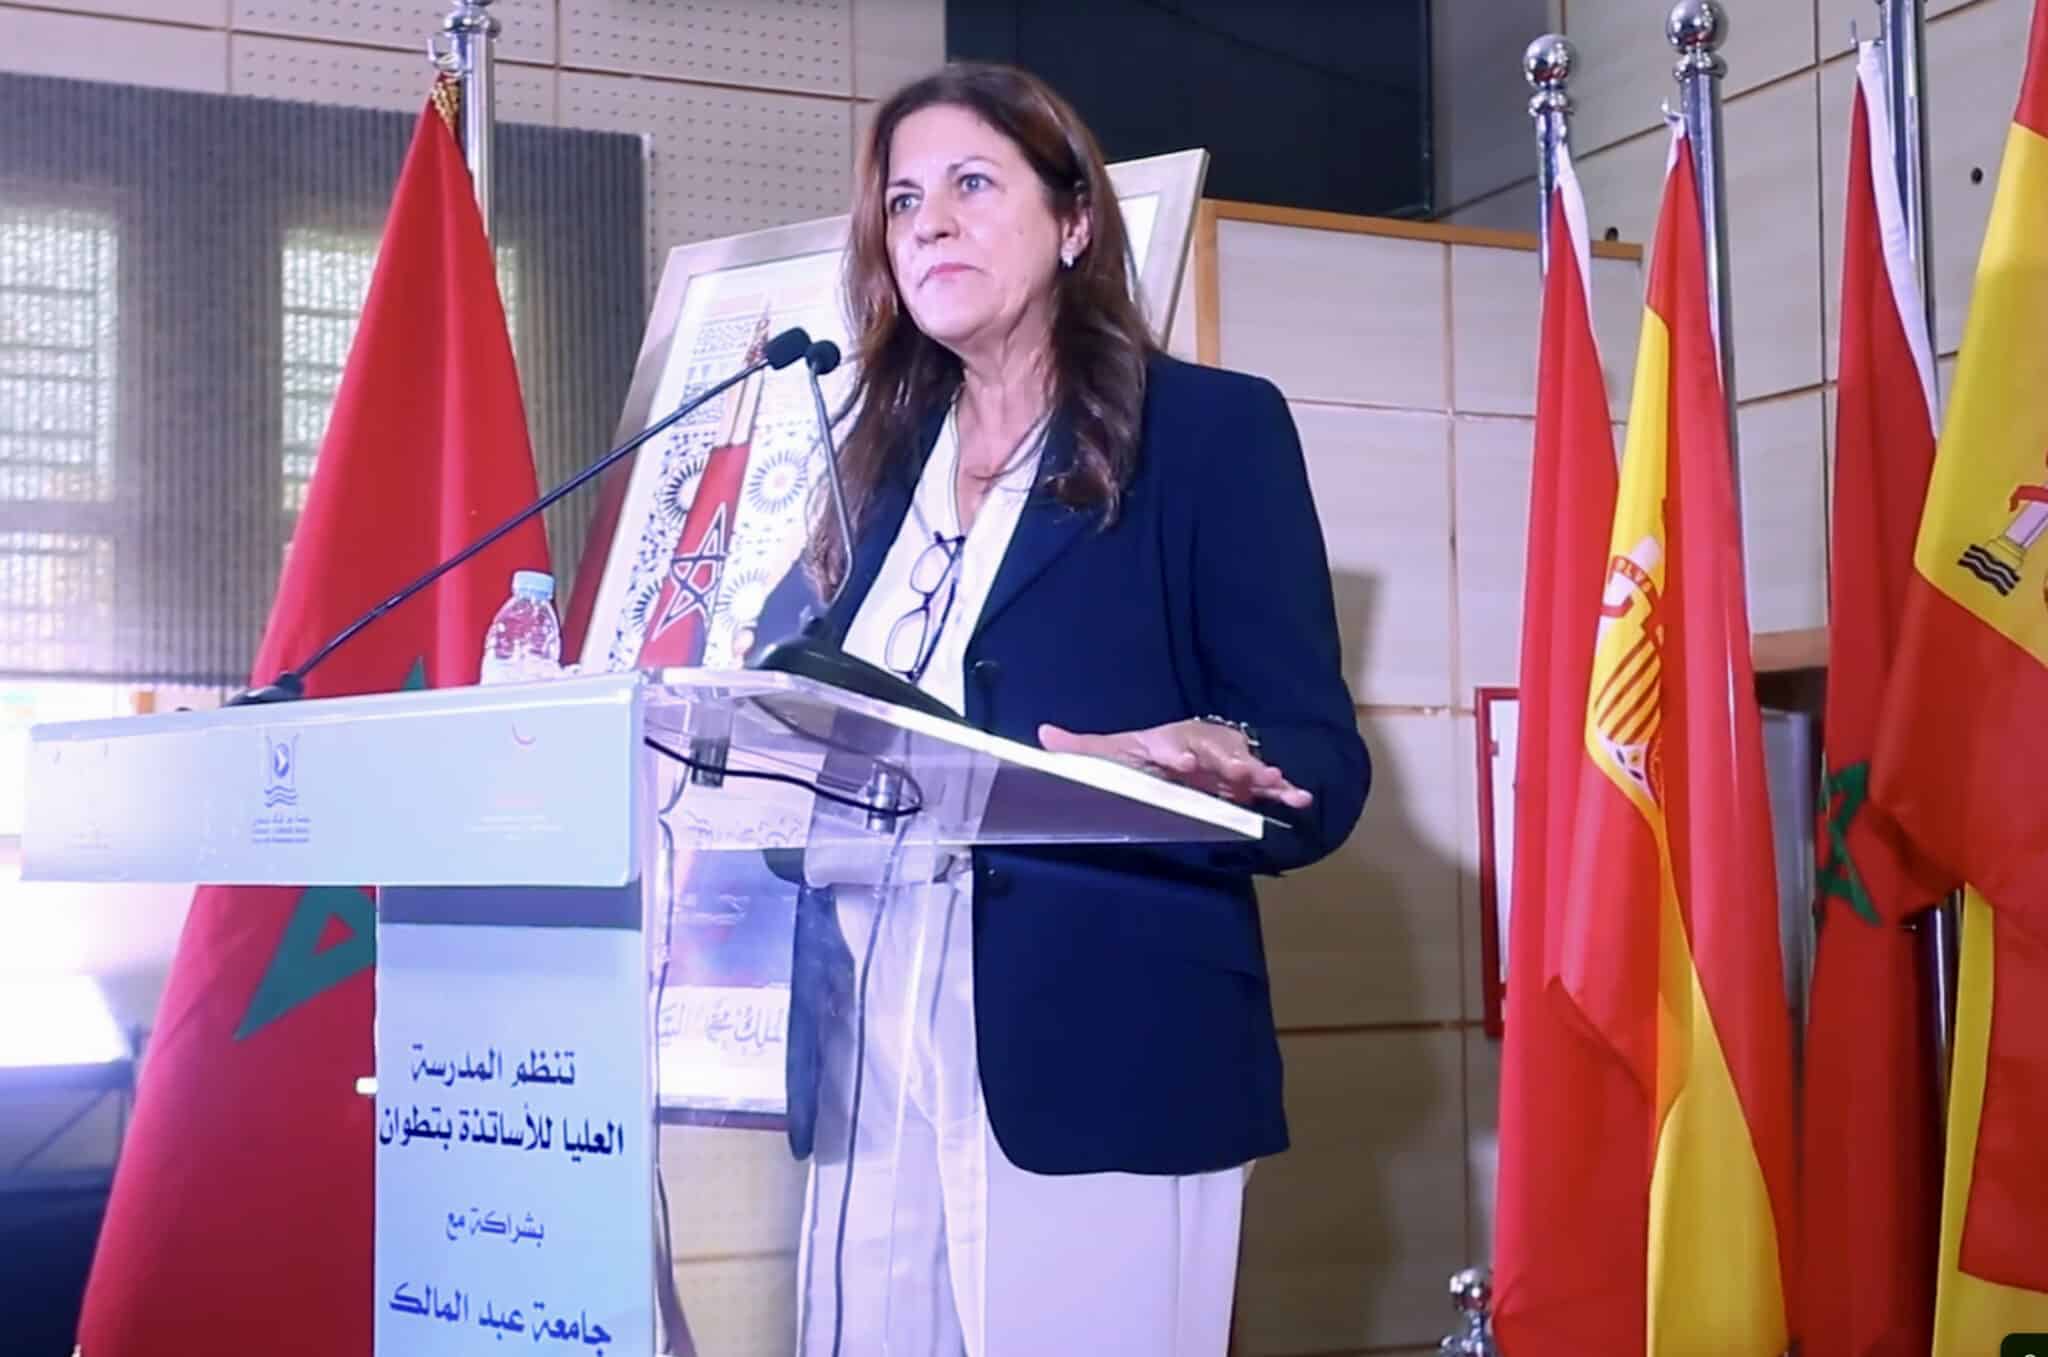 La ex ministra Trujillo contraataca: "La libertad de expresión está más amparada en Marruecos que en España"